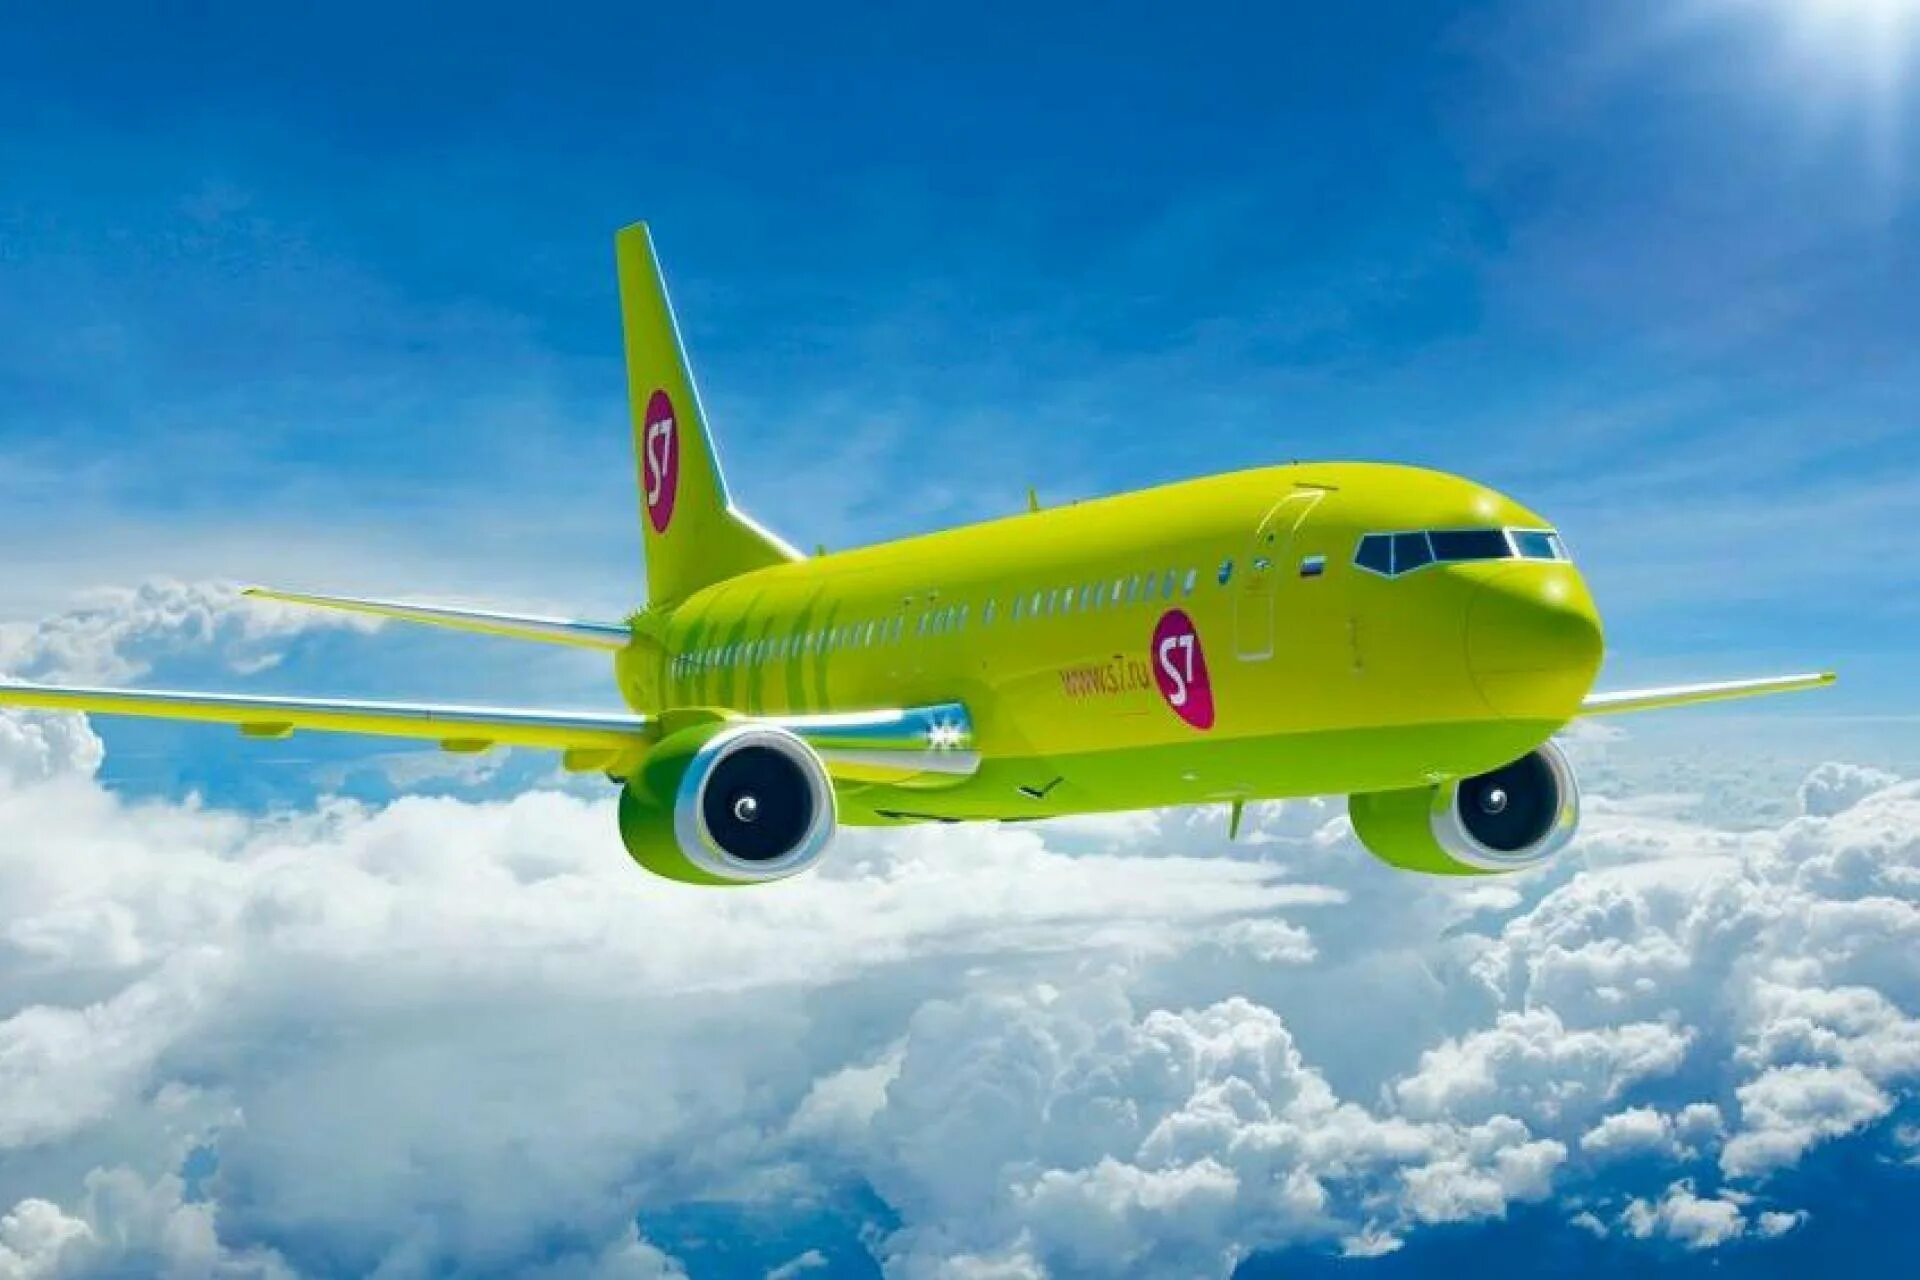 Зелёный самолёт s7. Самолёты авиакомпании s7. S7 Airlines авиакомпания. Авиакомпания Сибирь s7 Airlines.